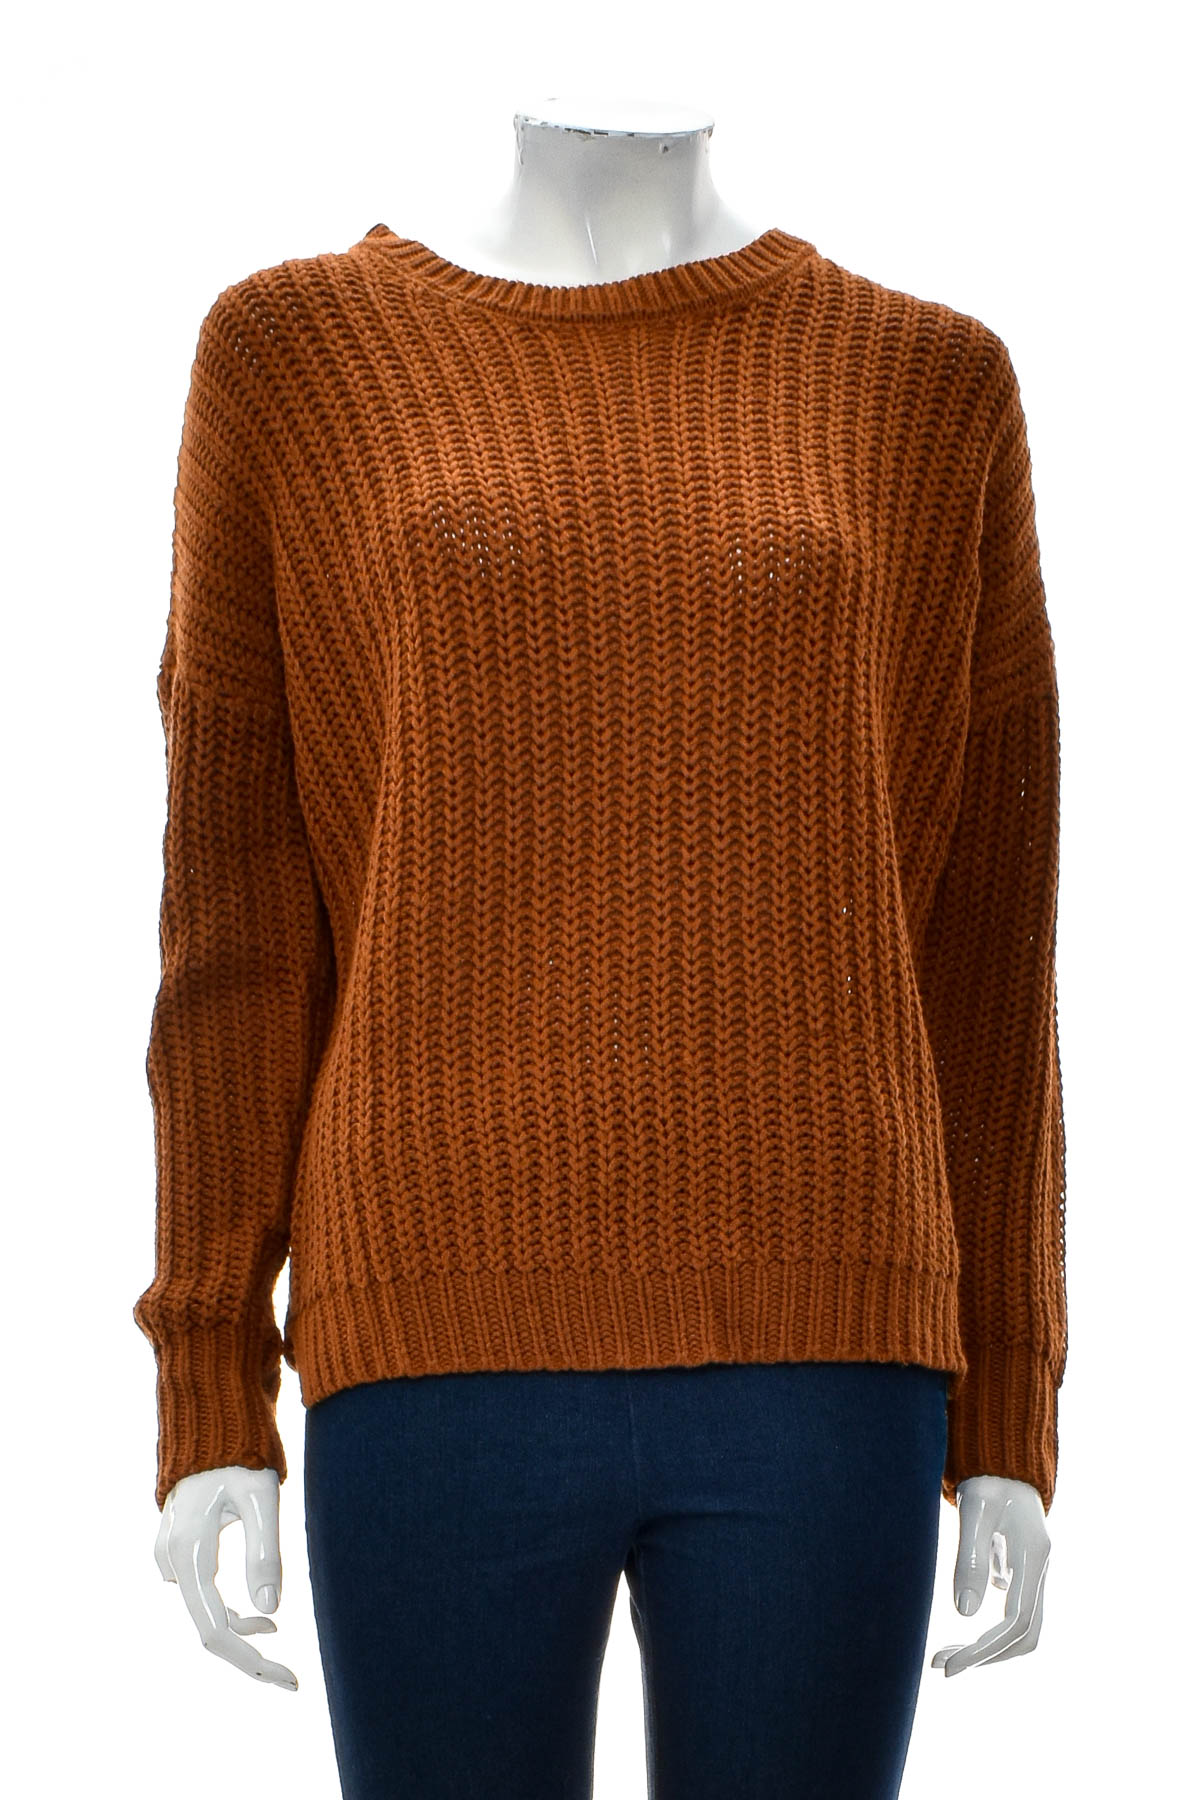 Women's sweater - Blind Date - 0